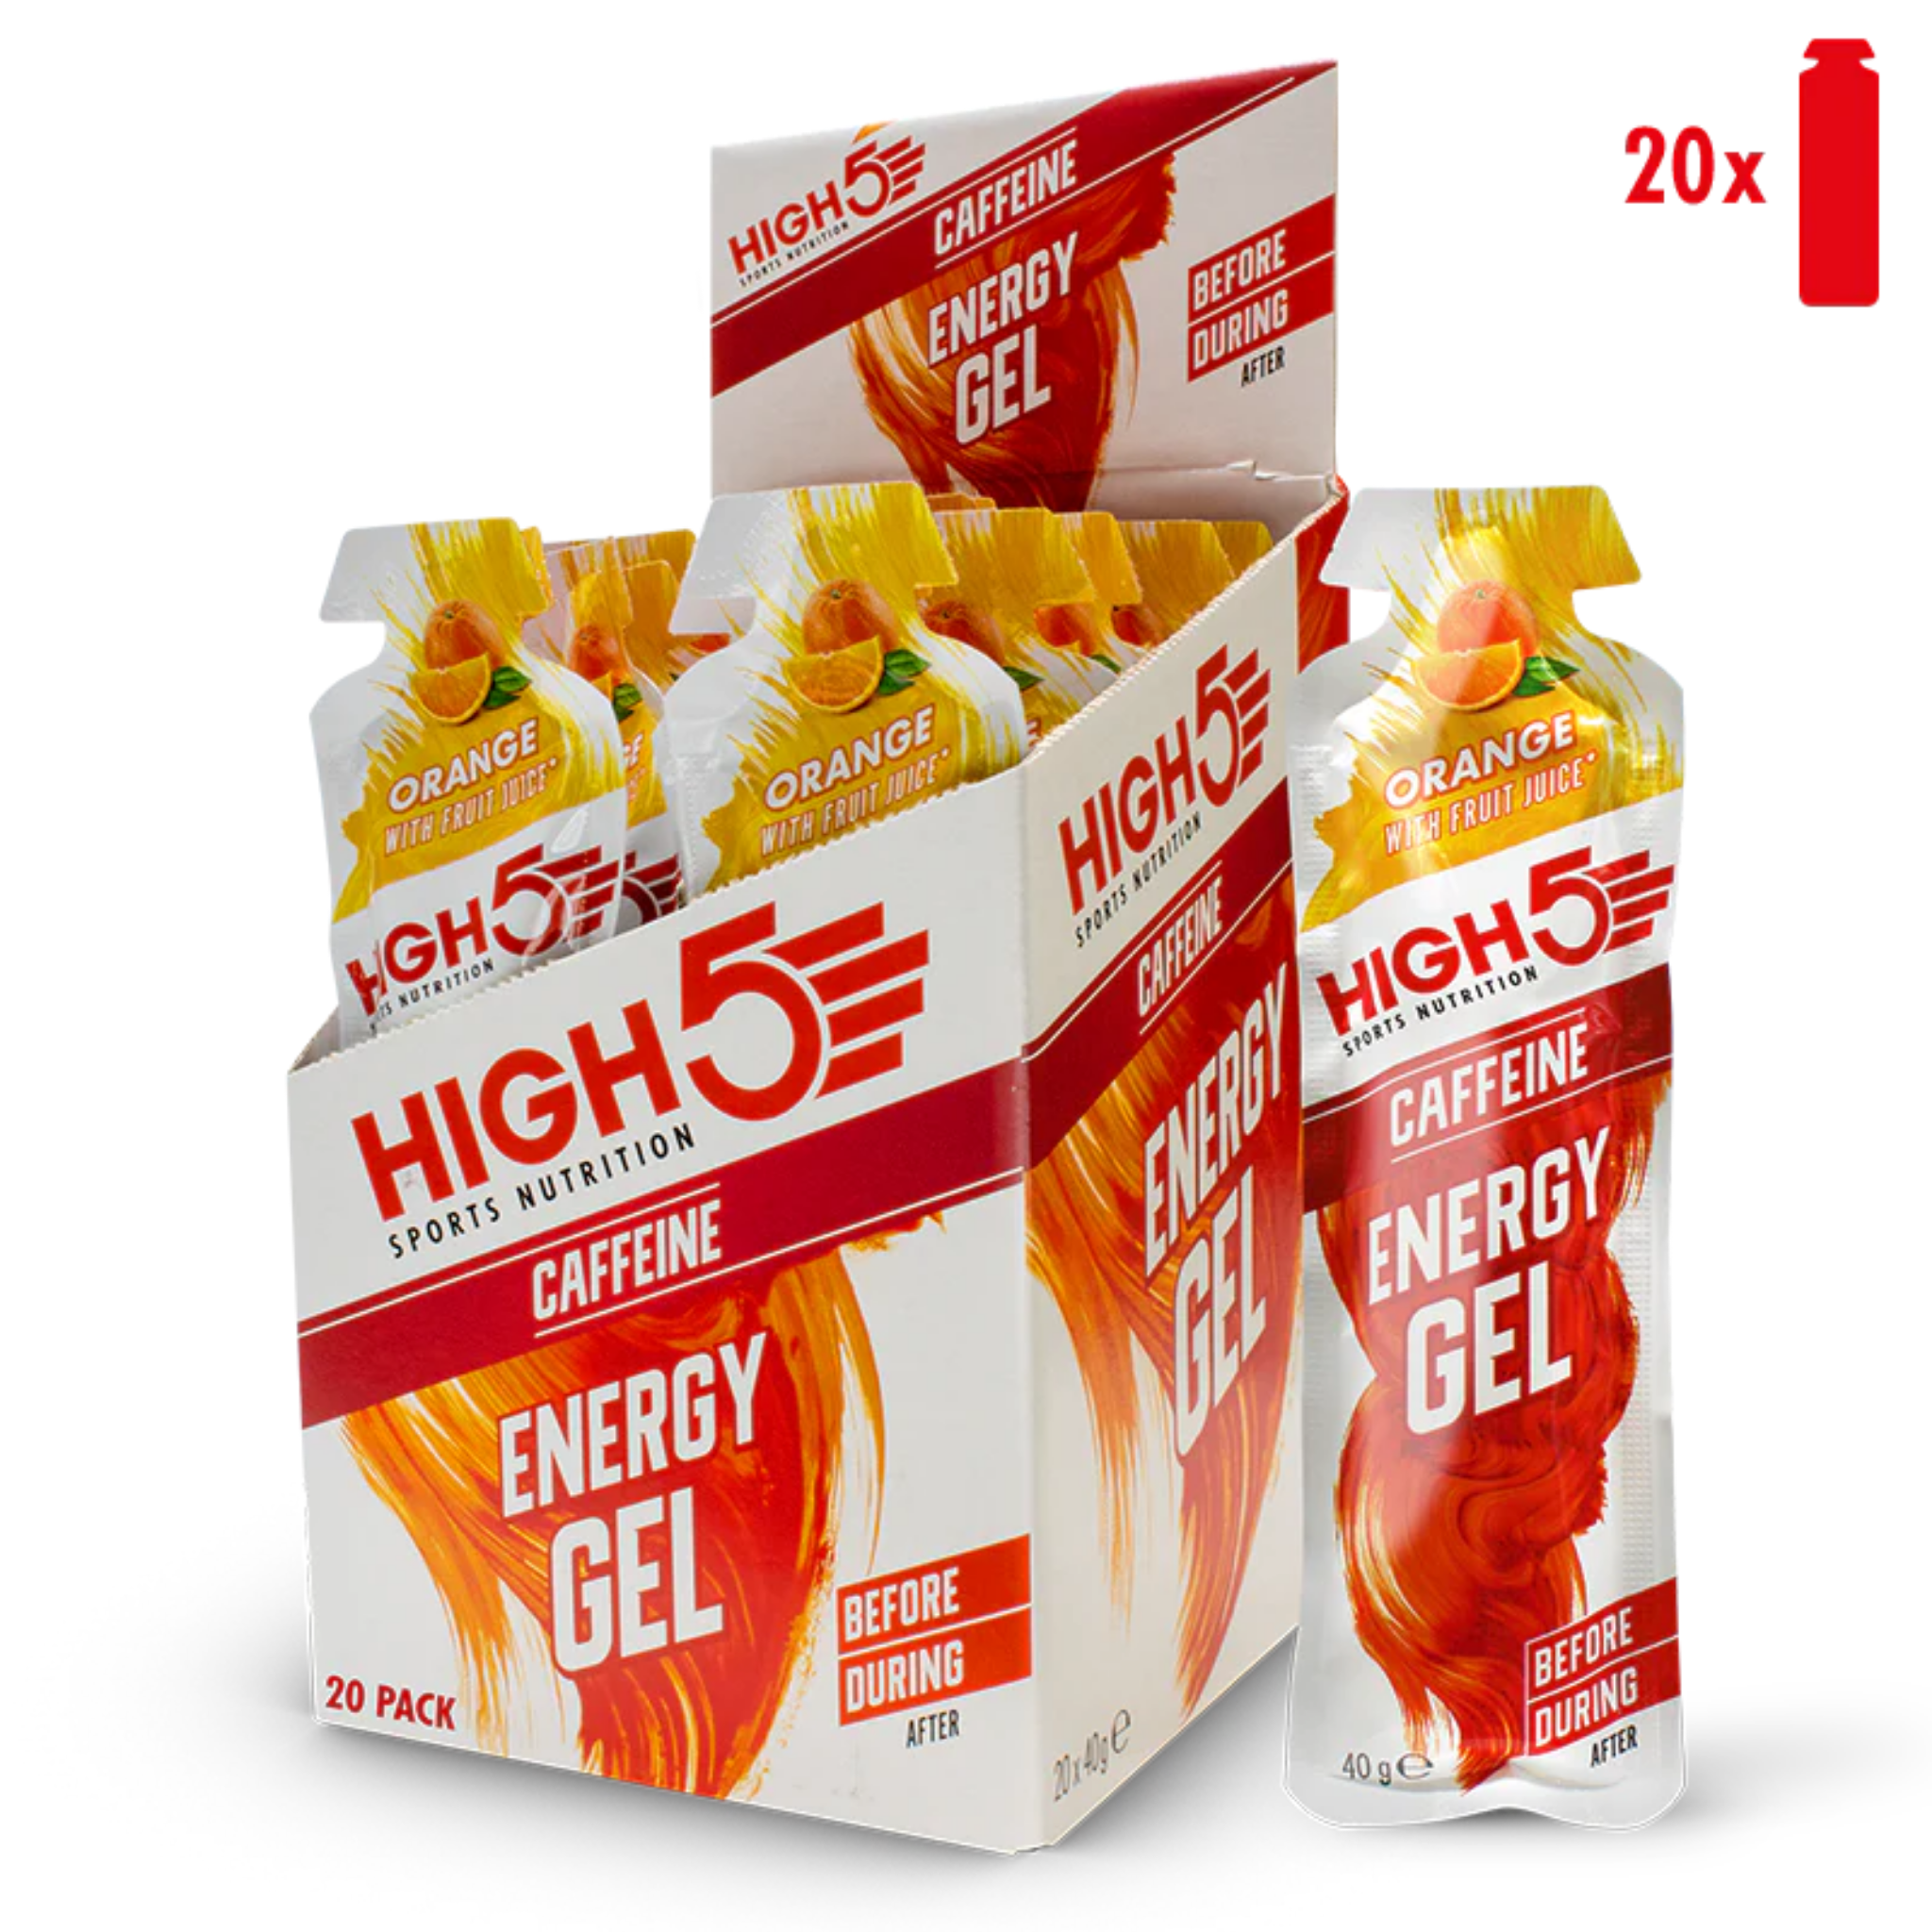 High5 Energi gel Caffeine Orange (20x40g)